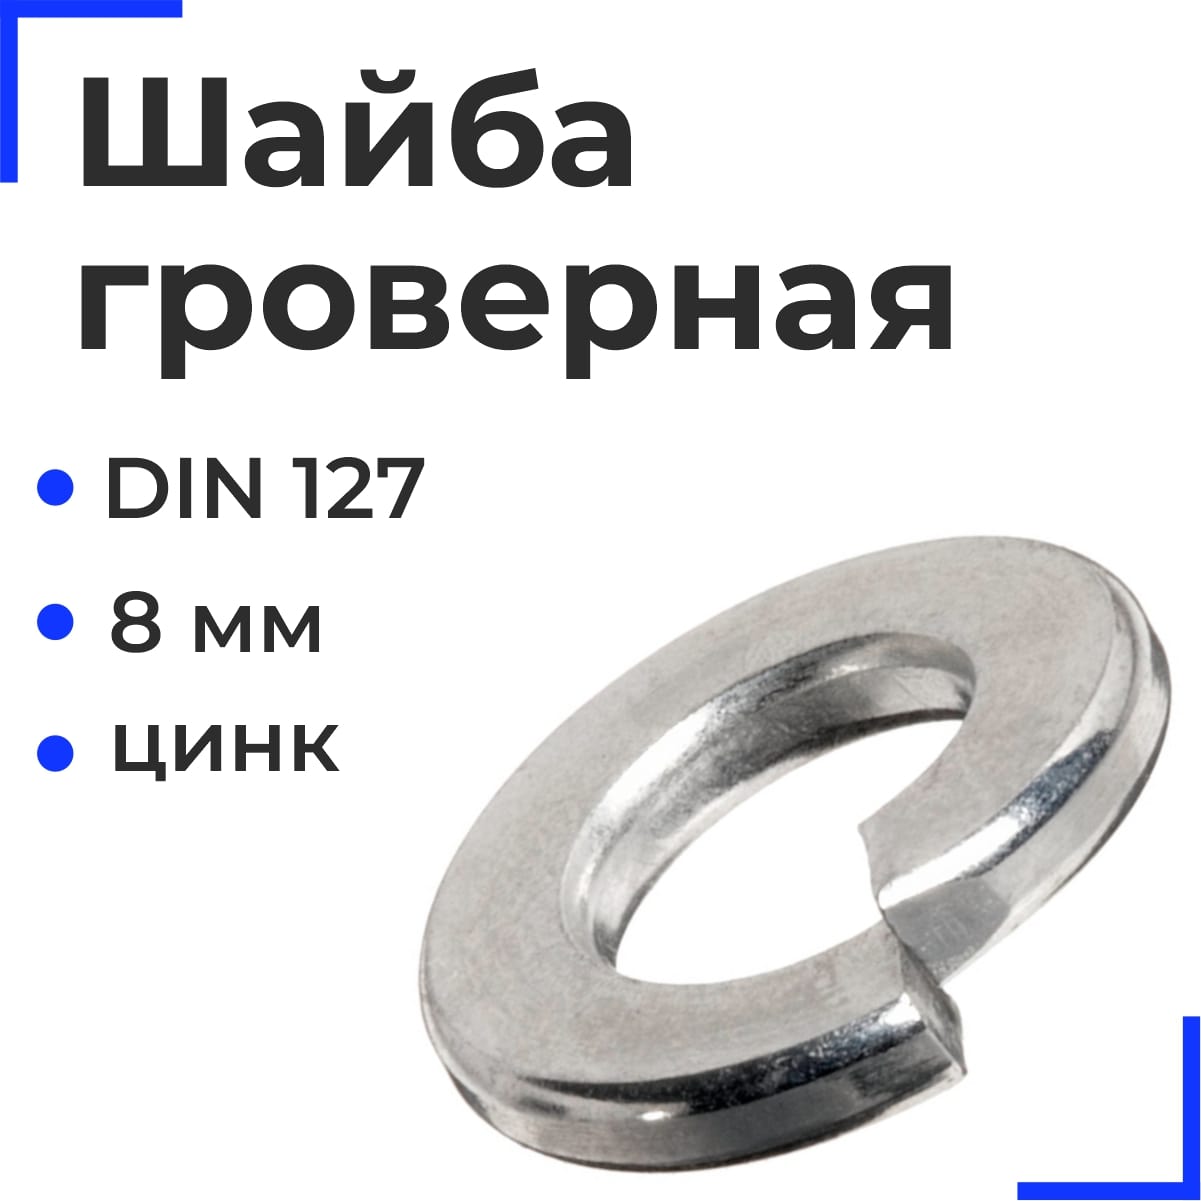 Шайба гроверная М 8 DIN 127 цинк